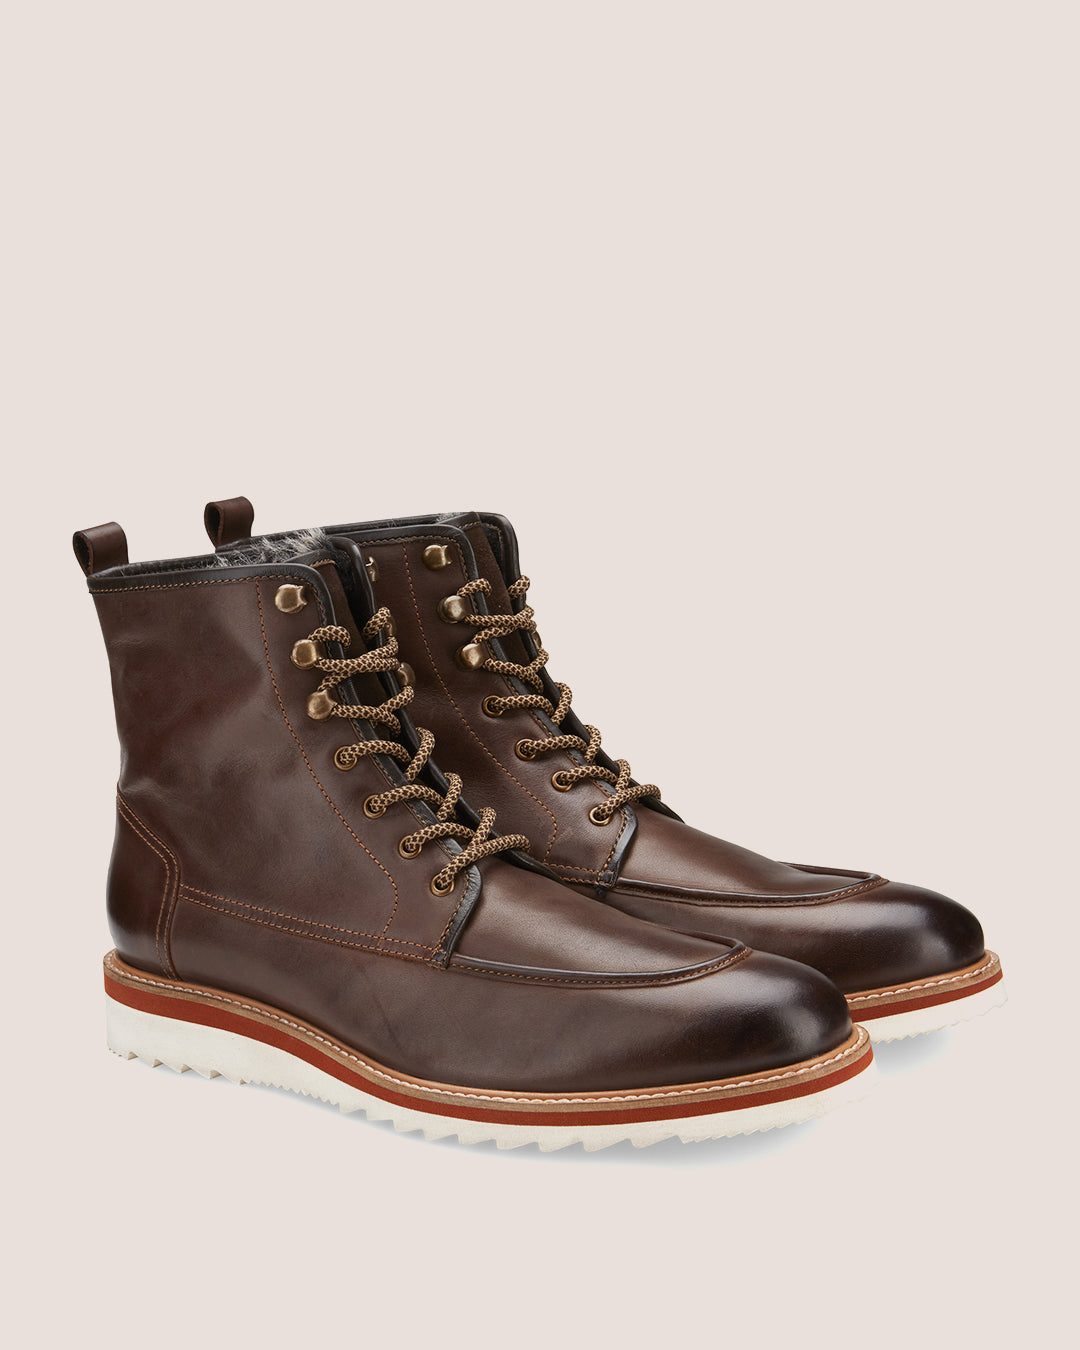 Vintage Foundry Co. Men's Martin Chelsea Boot, Size 10, Cognac